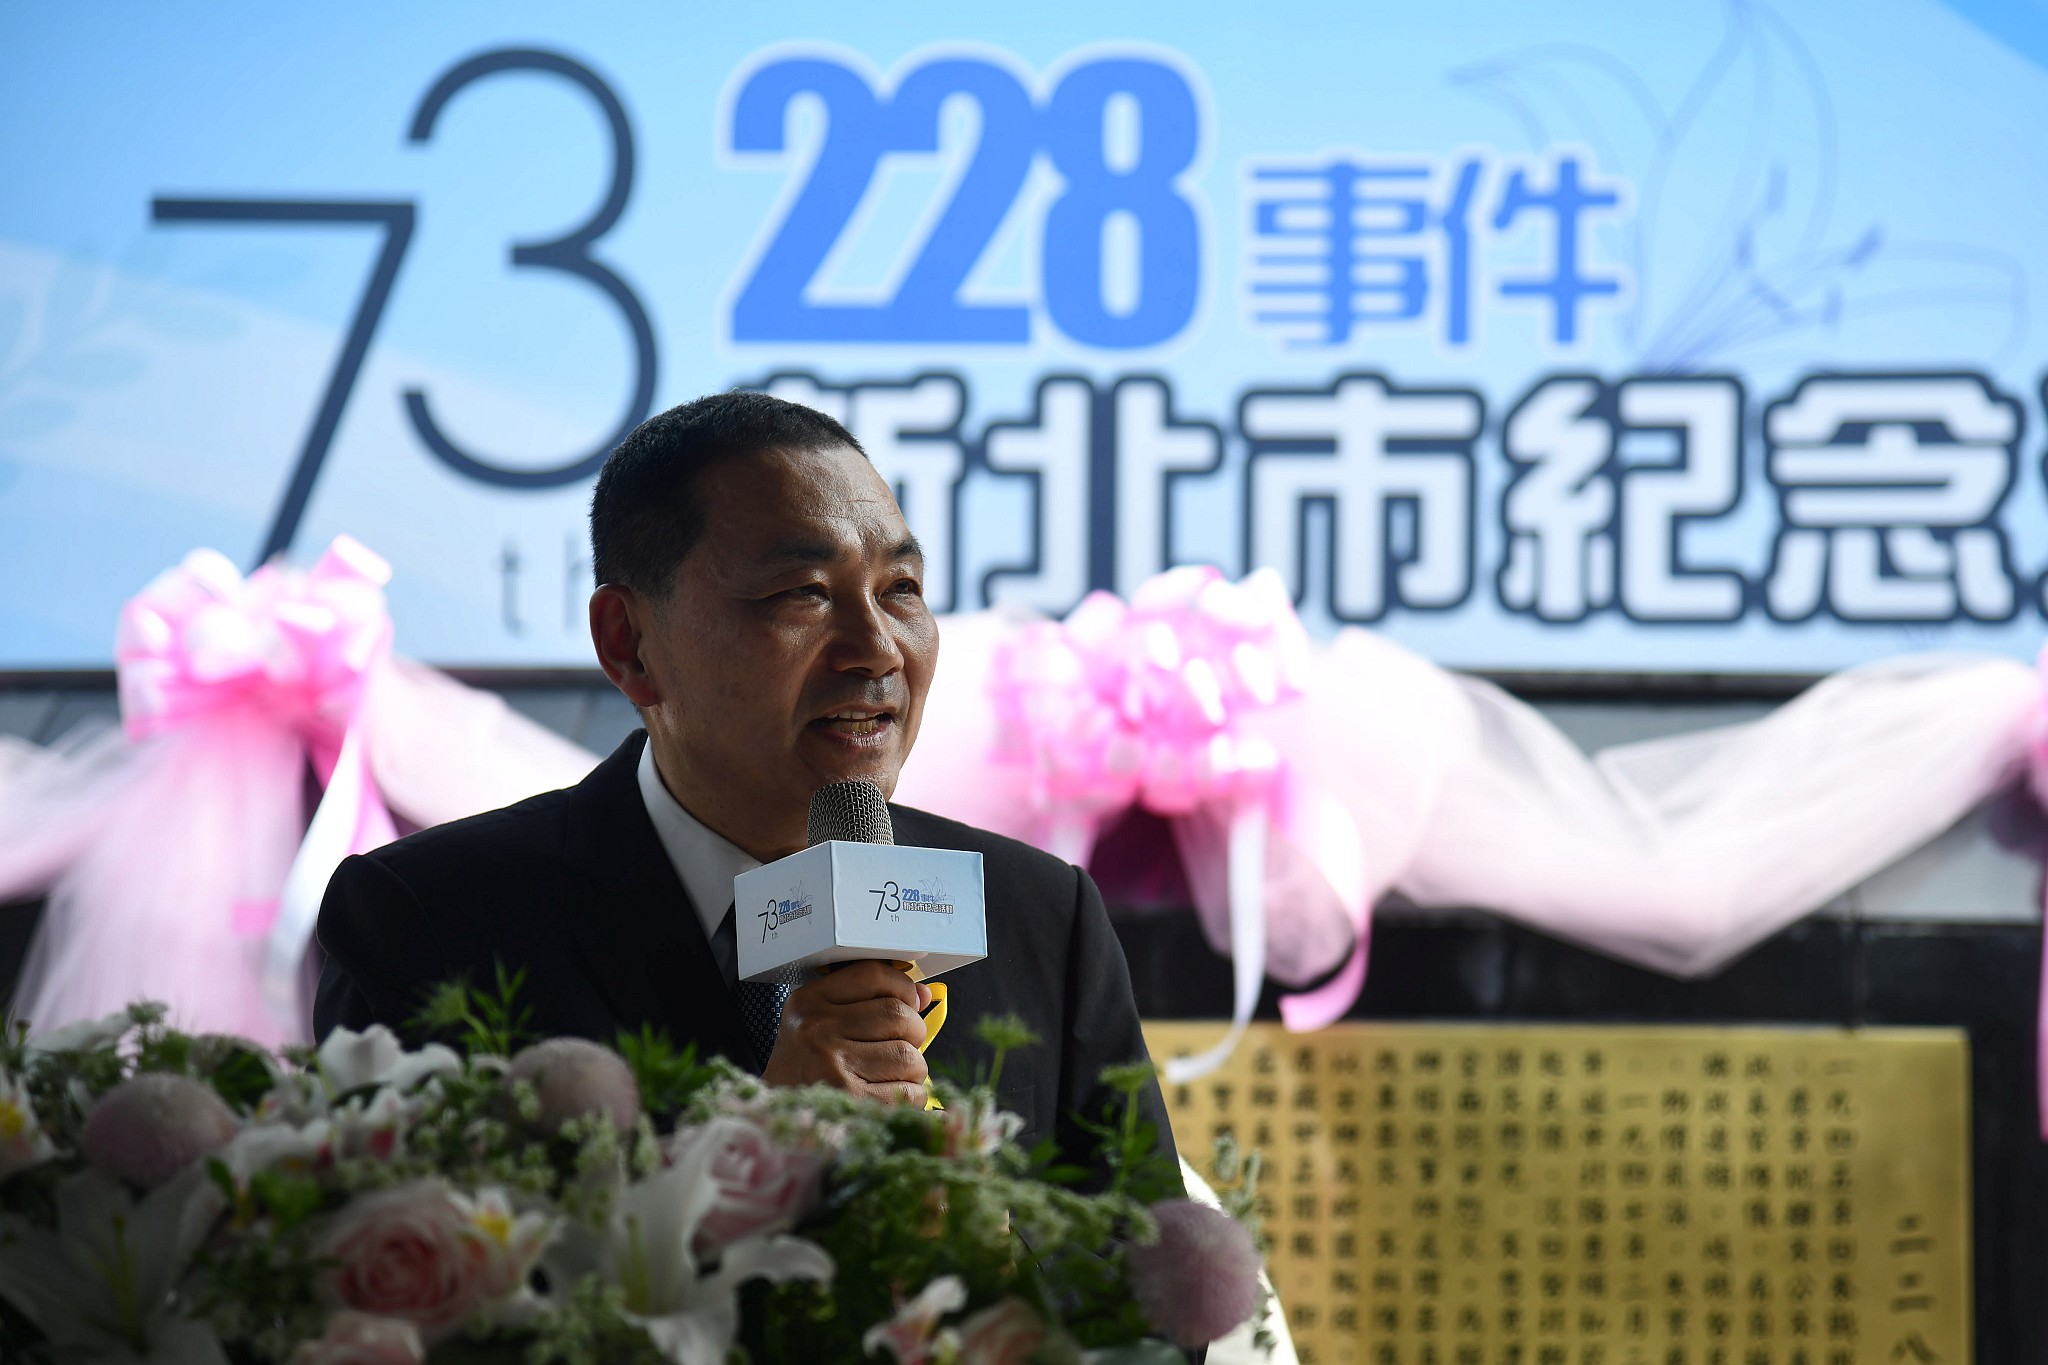 228事件是台灣現代史的重大事件